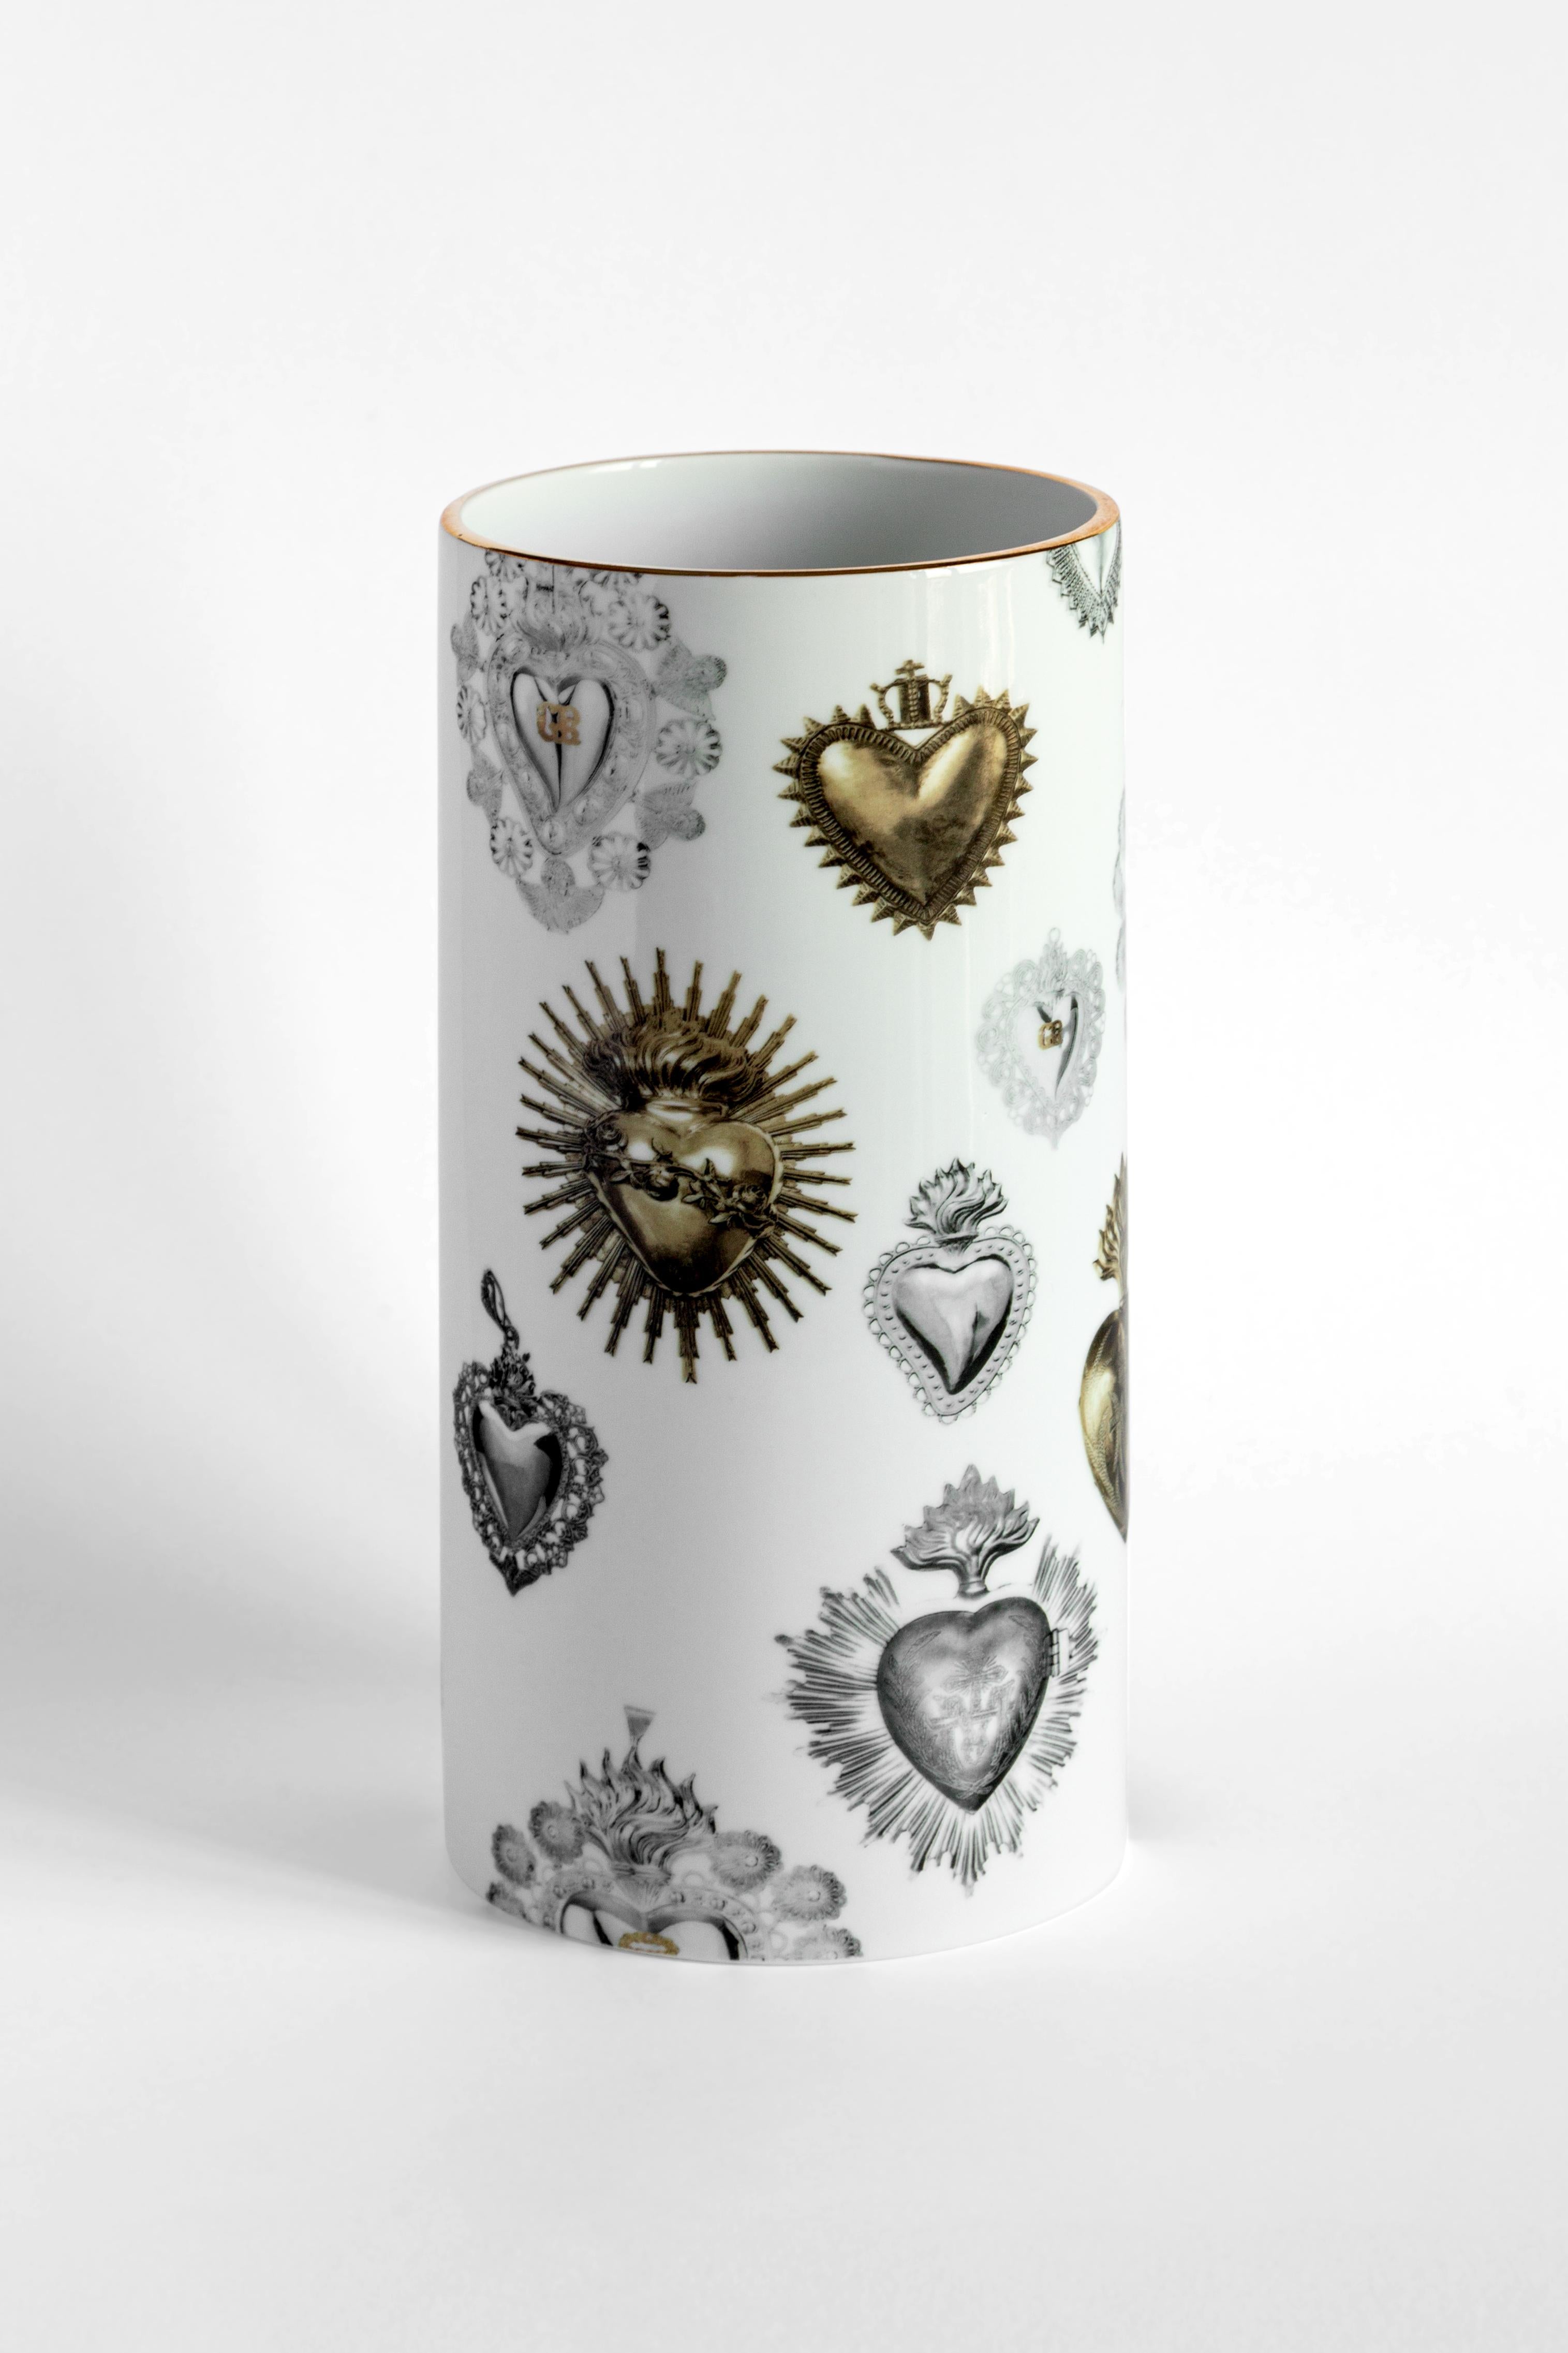 Das zylindrische Design dieser Porzellanvase wird durch die Anwendung eines zeitgenössischen und einzigartigen Dekors aufgewertet und einzigartig gemacht. Dieses Design ist inspiriert von herzförmigen Ex-Votos, die in Italien und im Mittelmeerraum